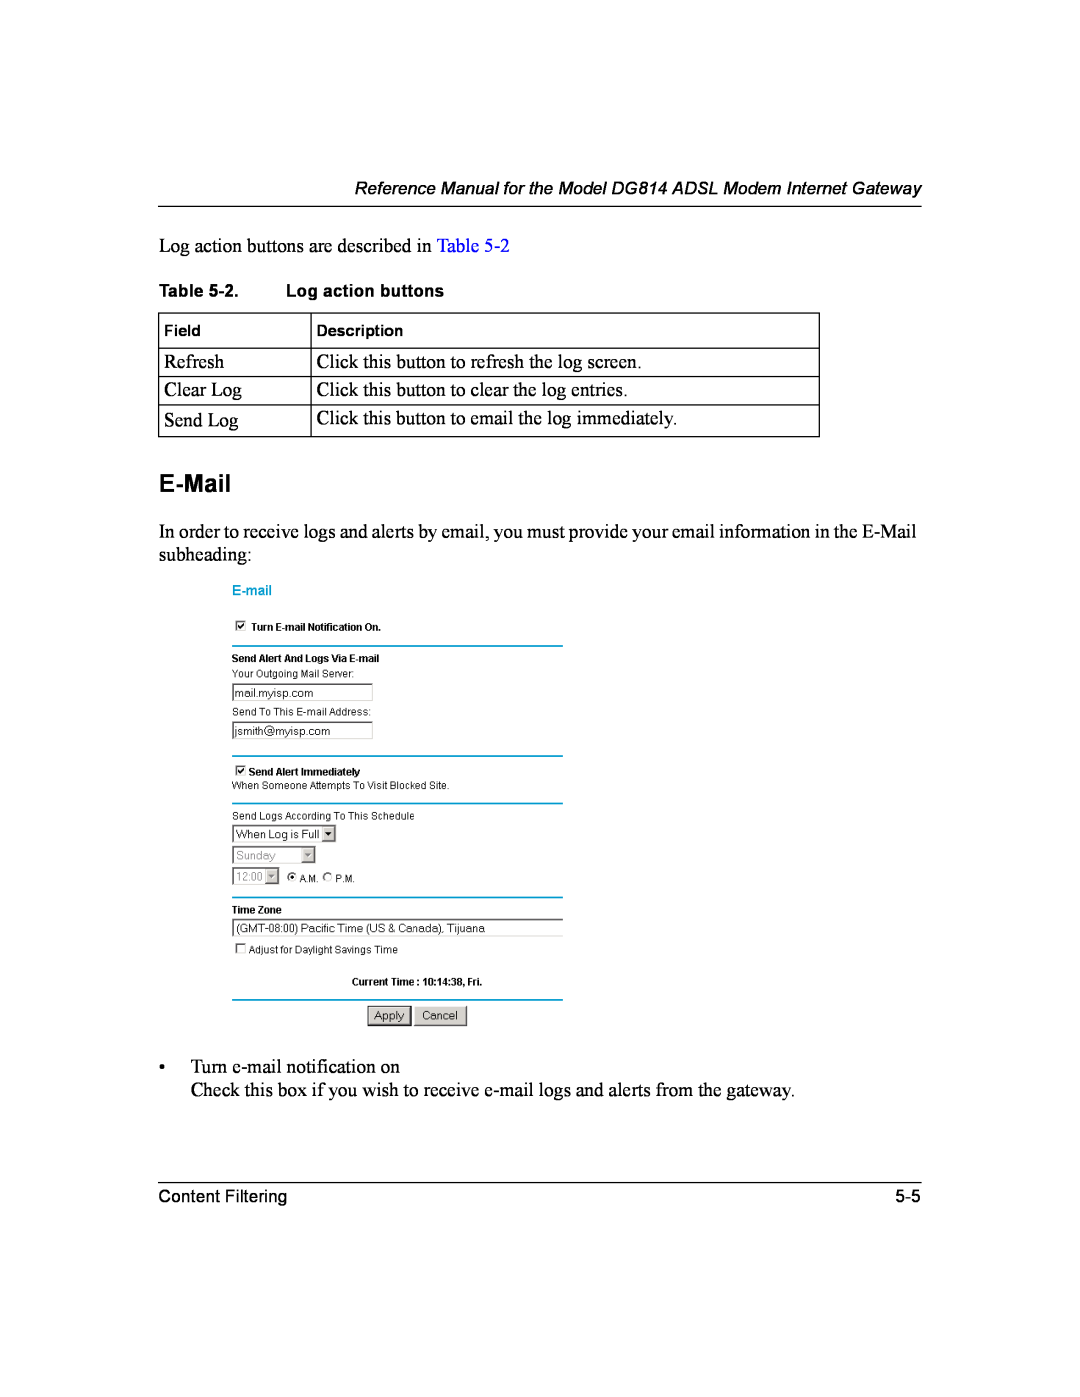 NETGEAR DG814 DSL manual E-Mail 